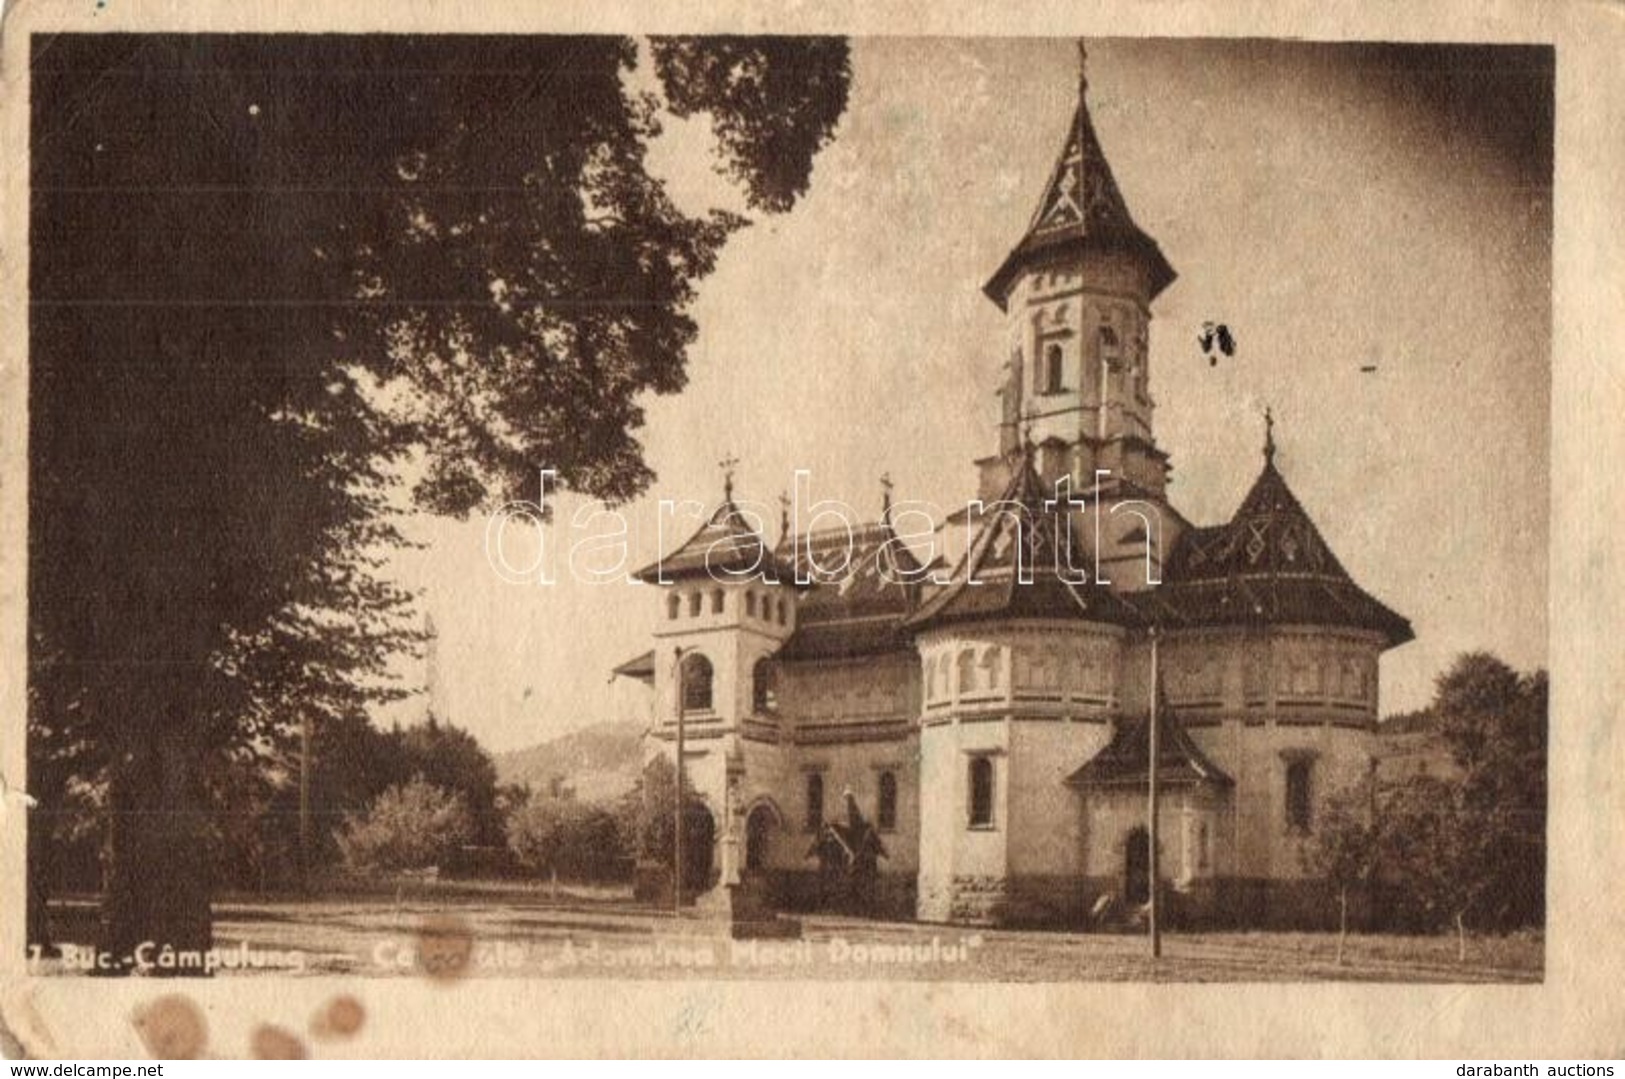 * T3 Campulung Moldovenesc, Moldvahosszúmező, Kimpolung (Bukovina, Bukowina); Catedrala Adormirea Maicii Domnului / Cath - Ohne Zuordnung